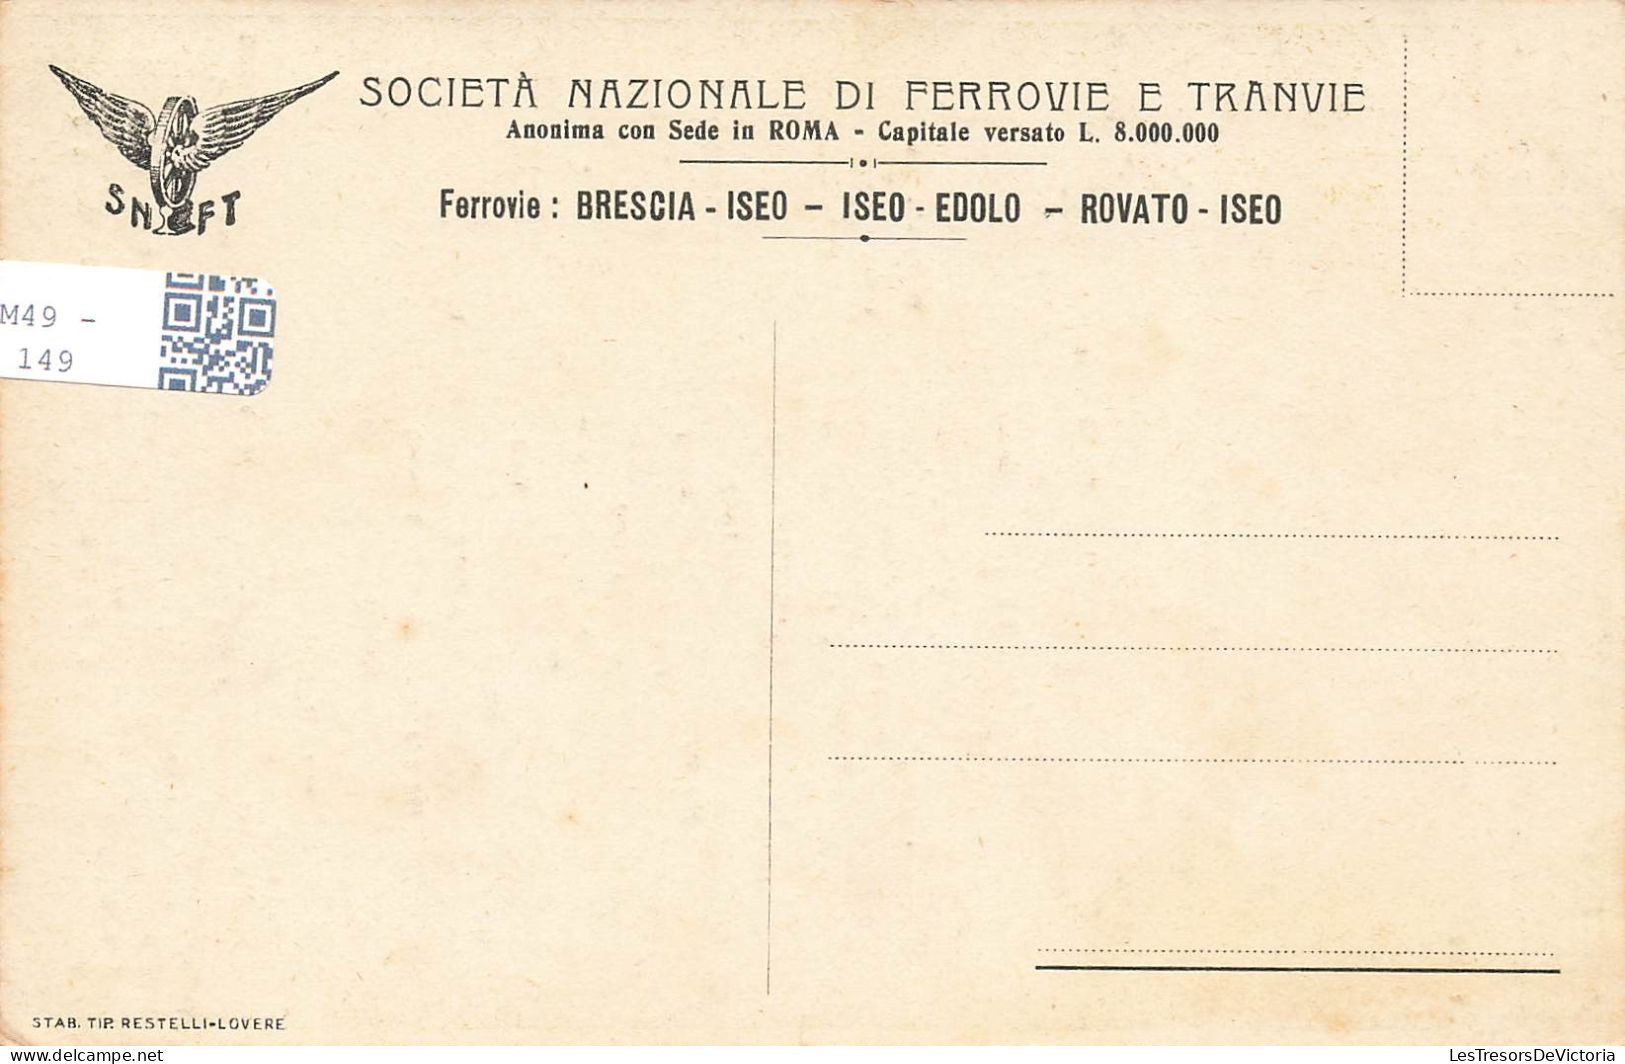 CARTES GEOGRAPHIQUES - Ferrovie - Brescia Iseo - Colorisé - Carte Postale Ancienne - Landkaarten